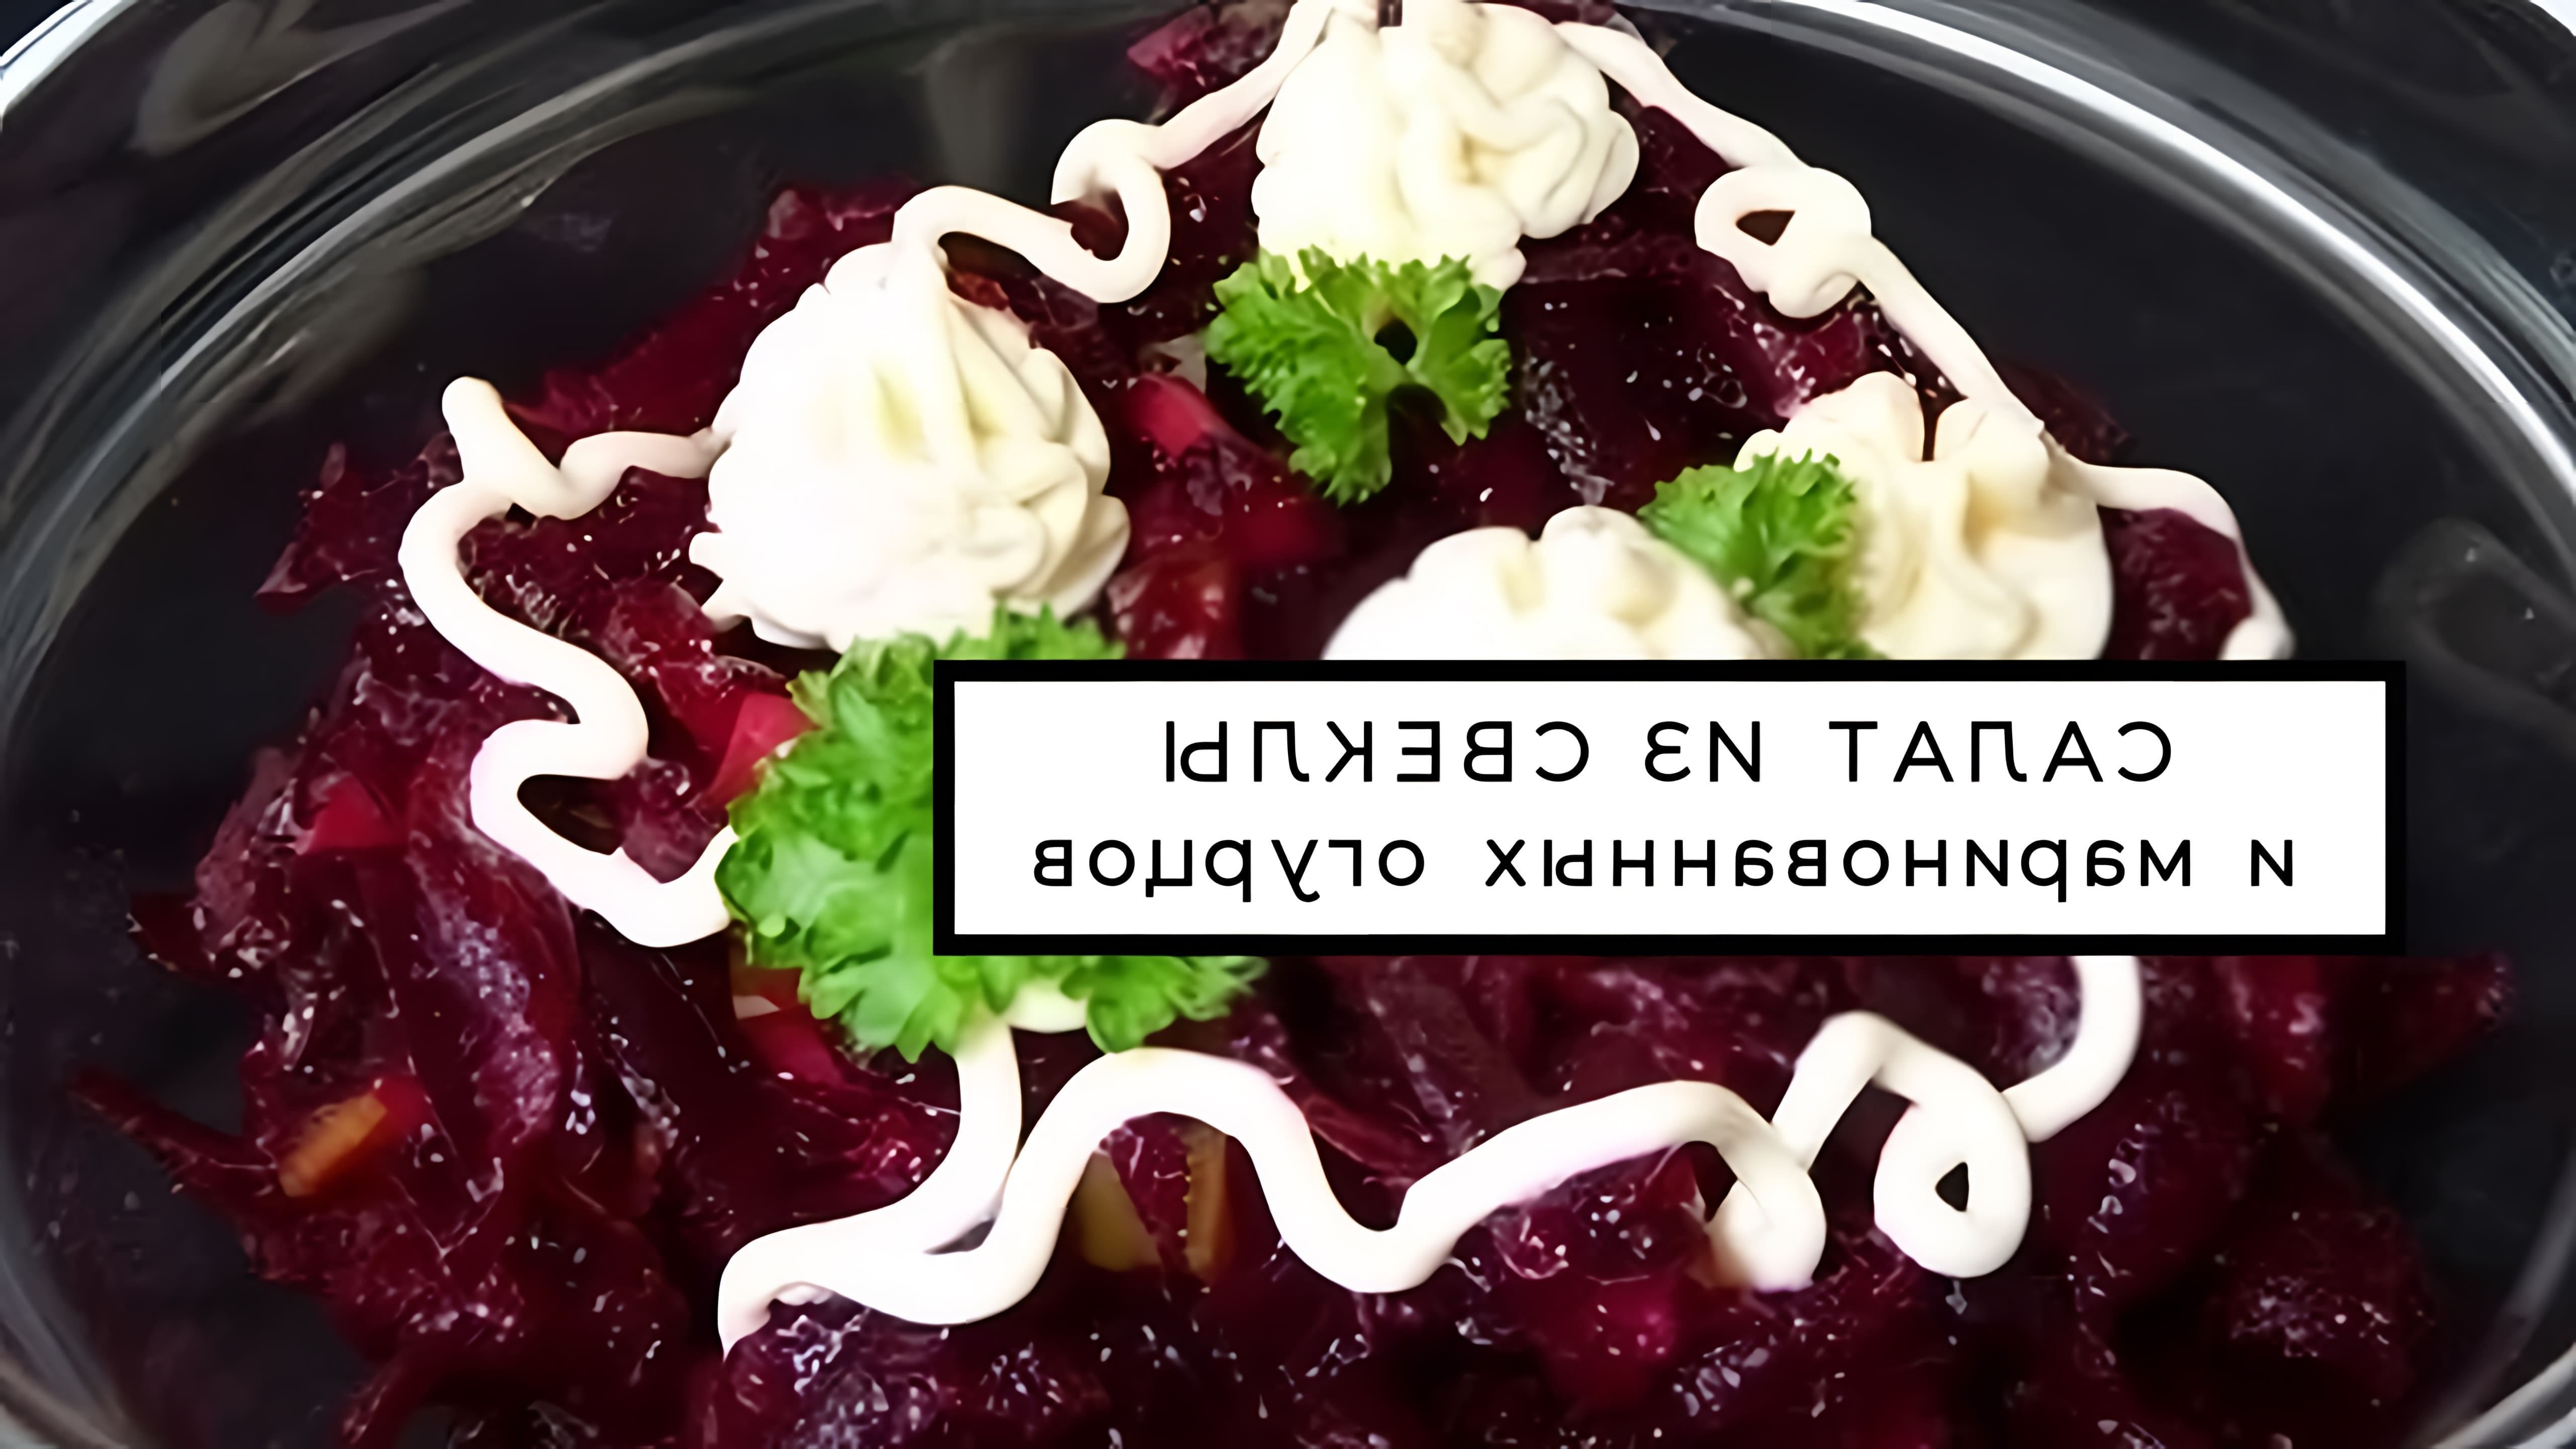 Видео посвящено салату из вареной свеклы и маринованных огурцов